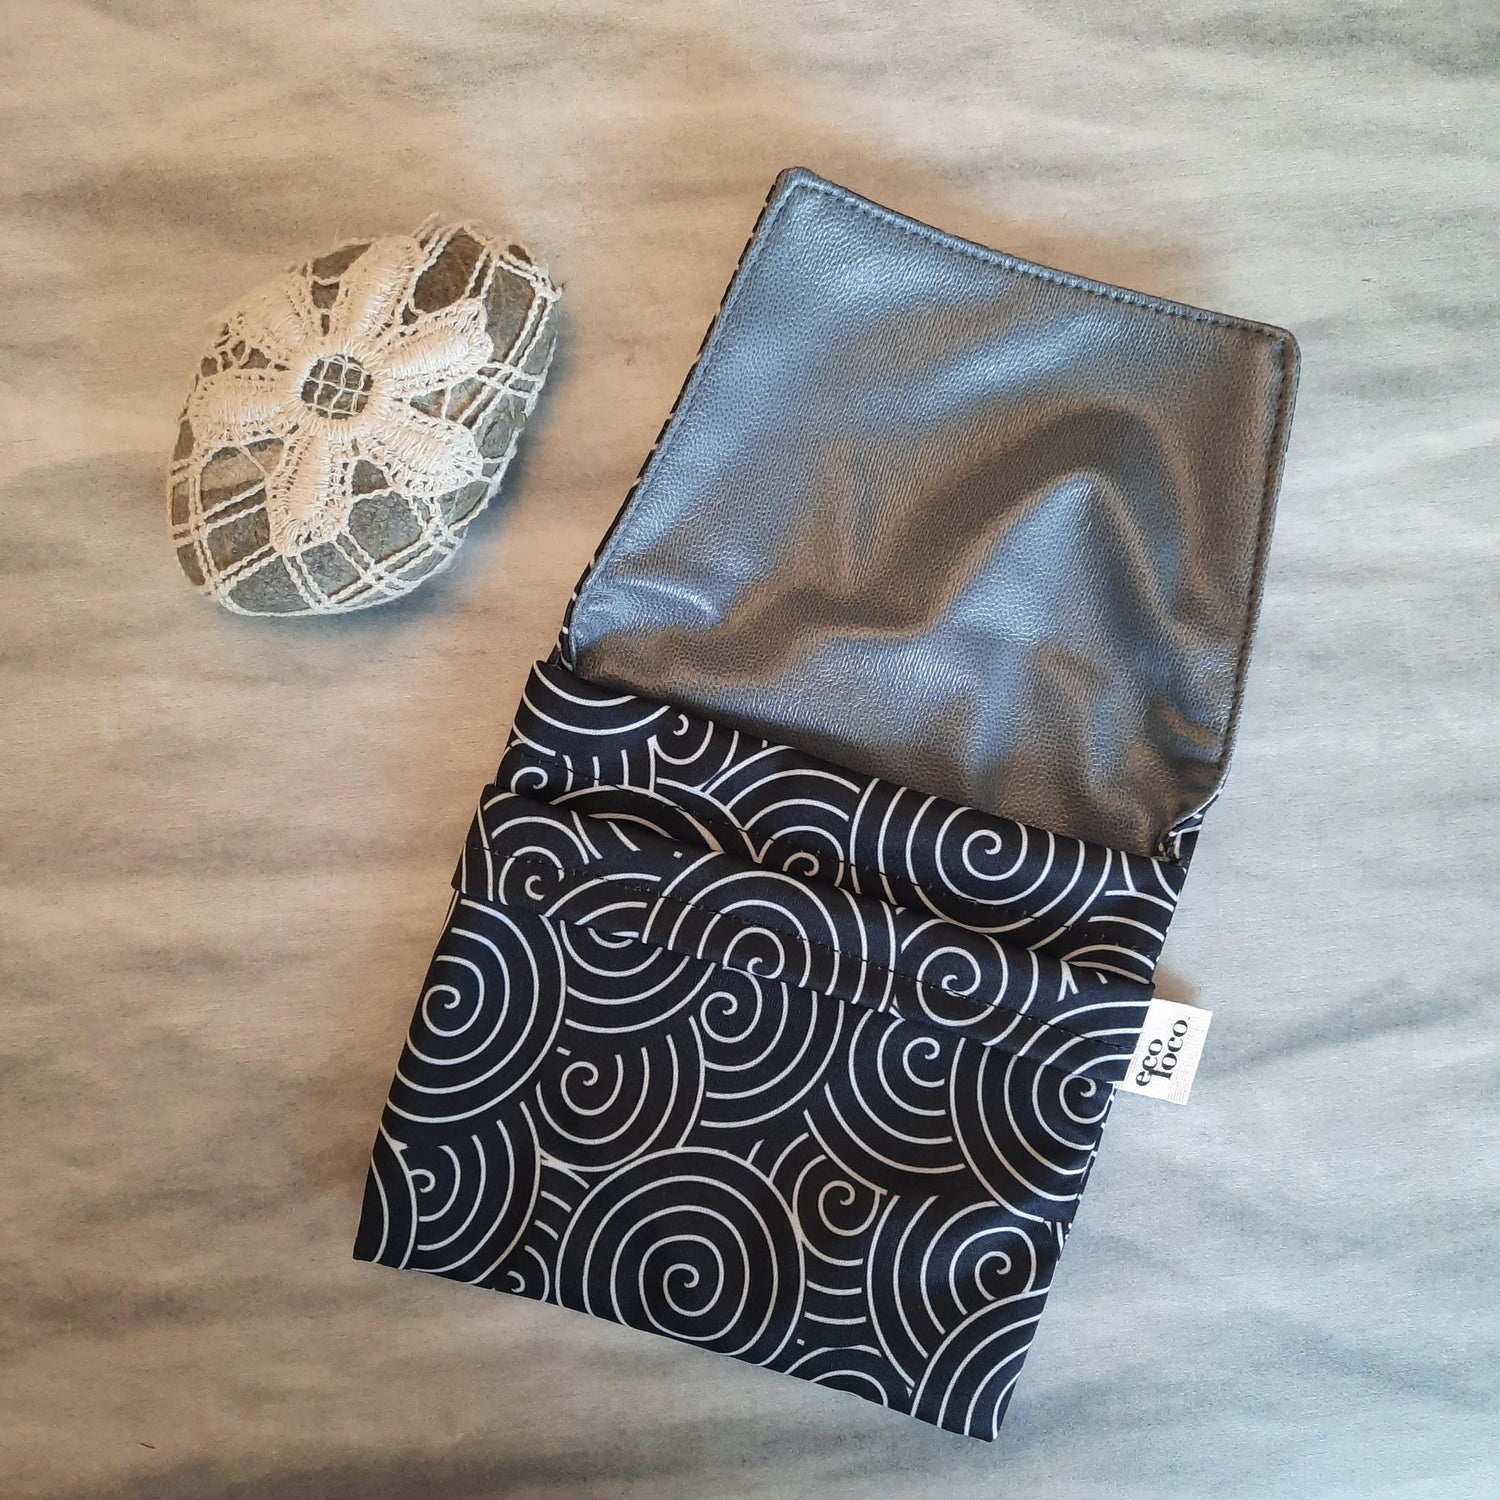 washable bag - sanitary pads